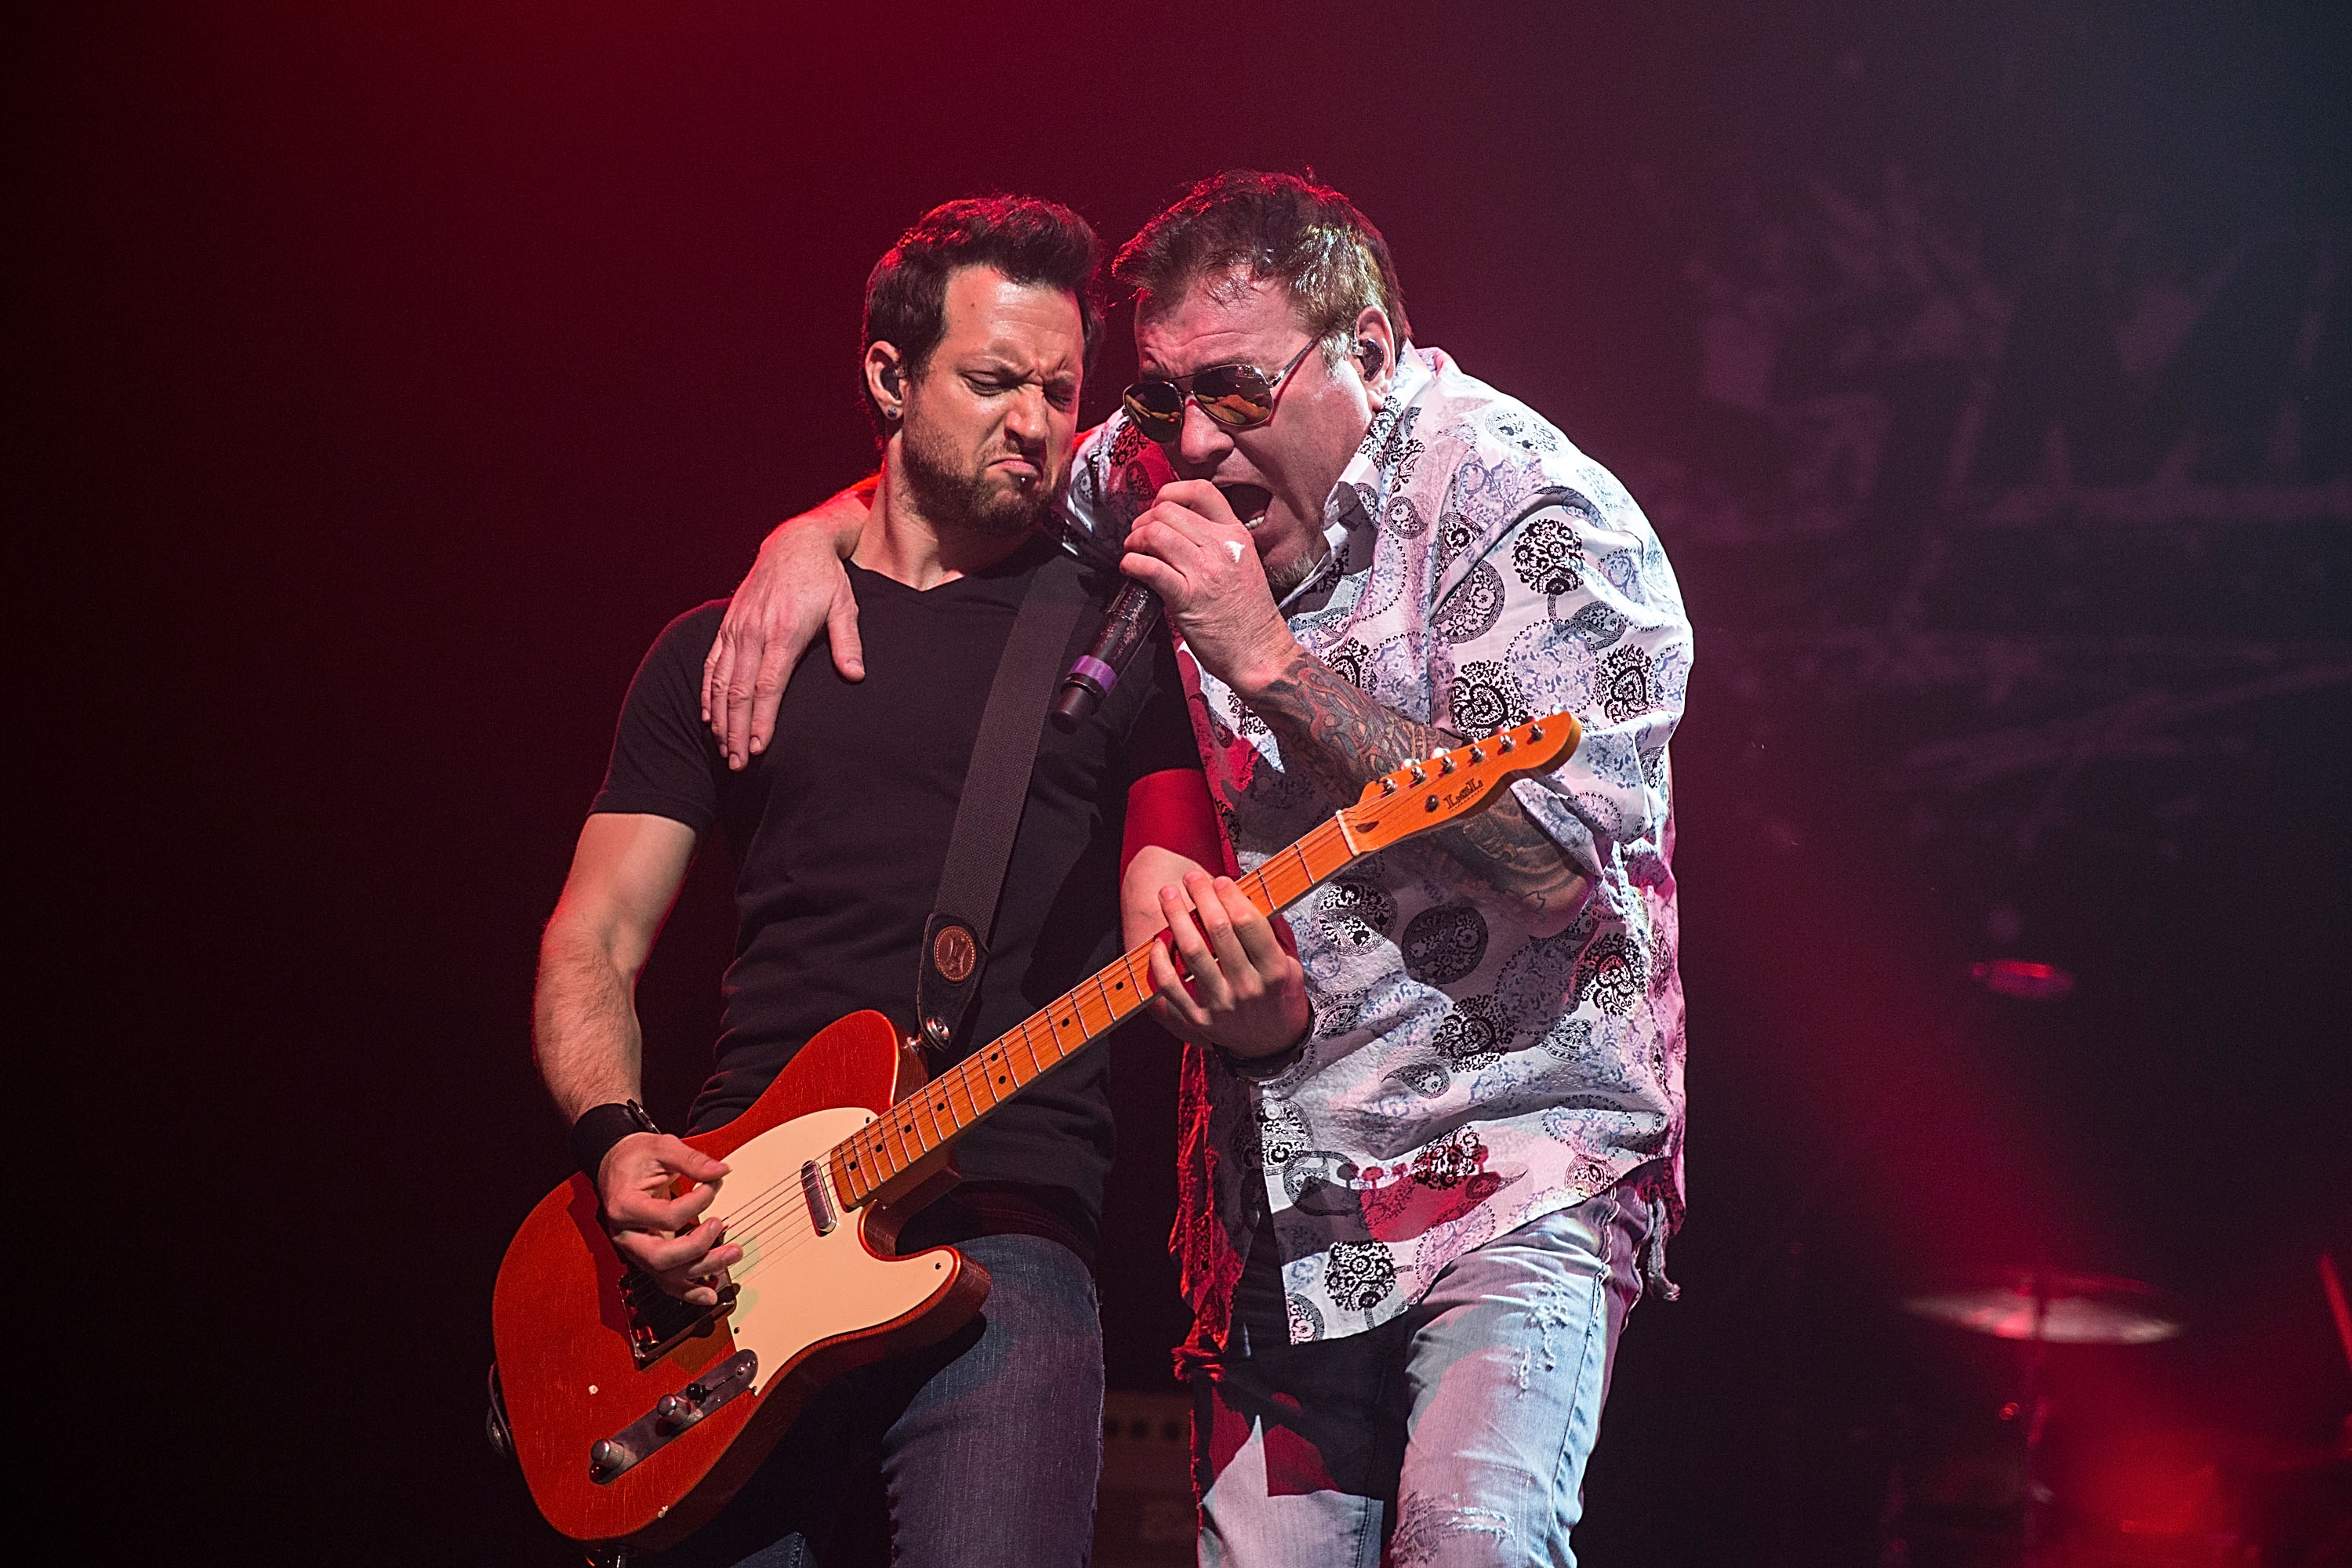 Sean Hurwitz und Steve Harwell von Smash Mouth spielen ein Konzert im Rahmen der Under The Sun Tour am 16. August 2013 in Austin, Texas | Quelle: Getty Images